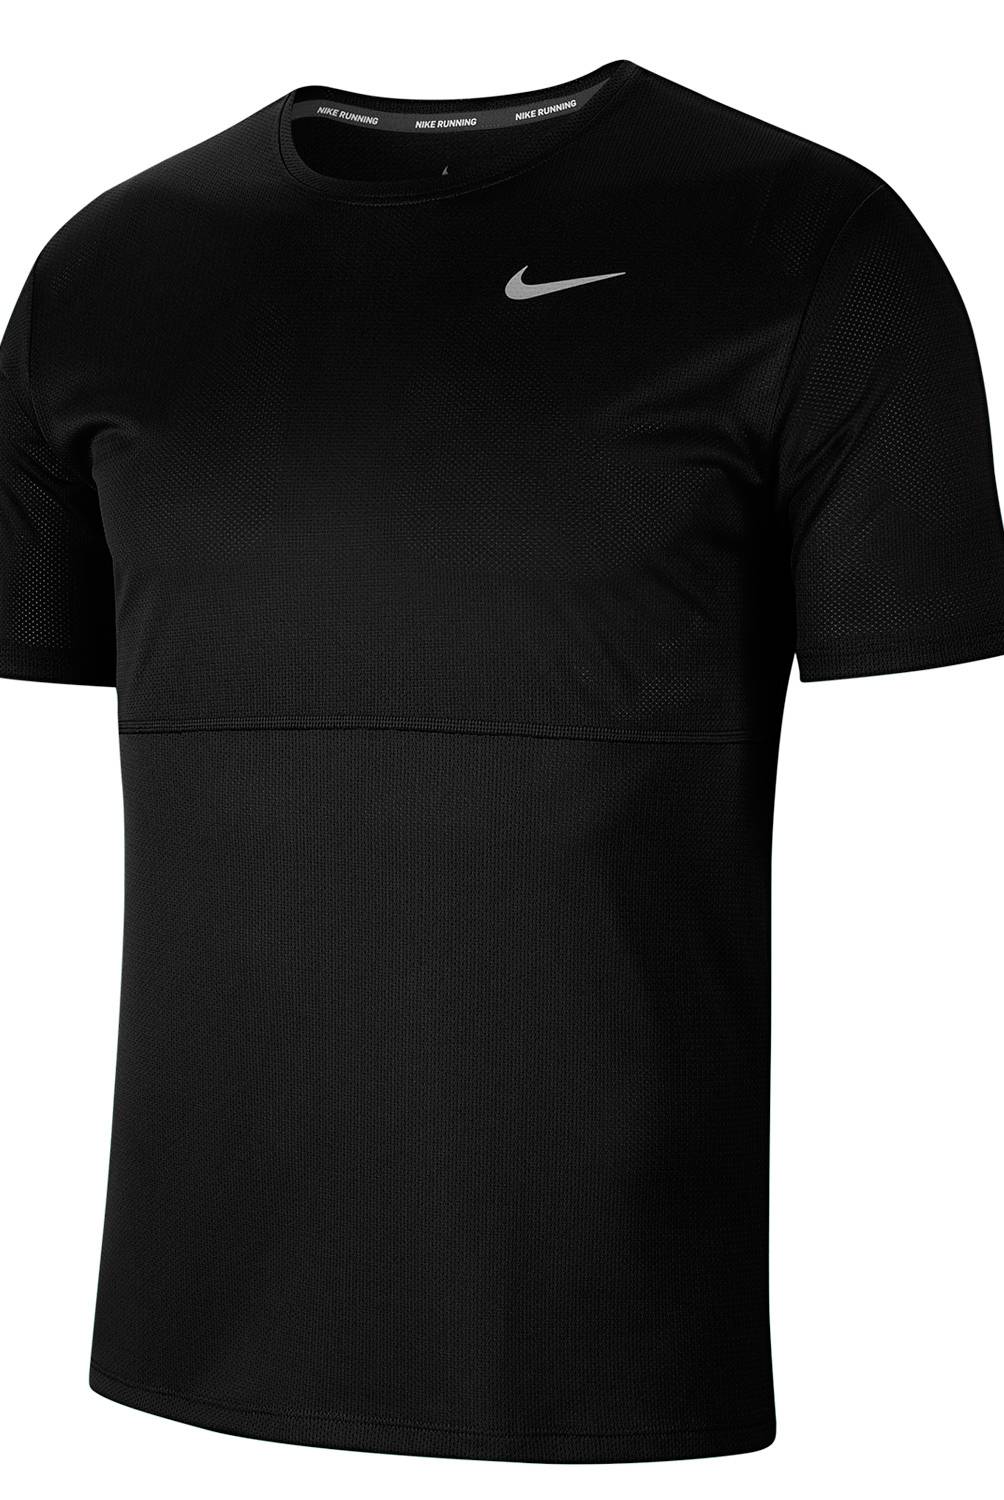 Nike - Polera deportiva Running Hombre